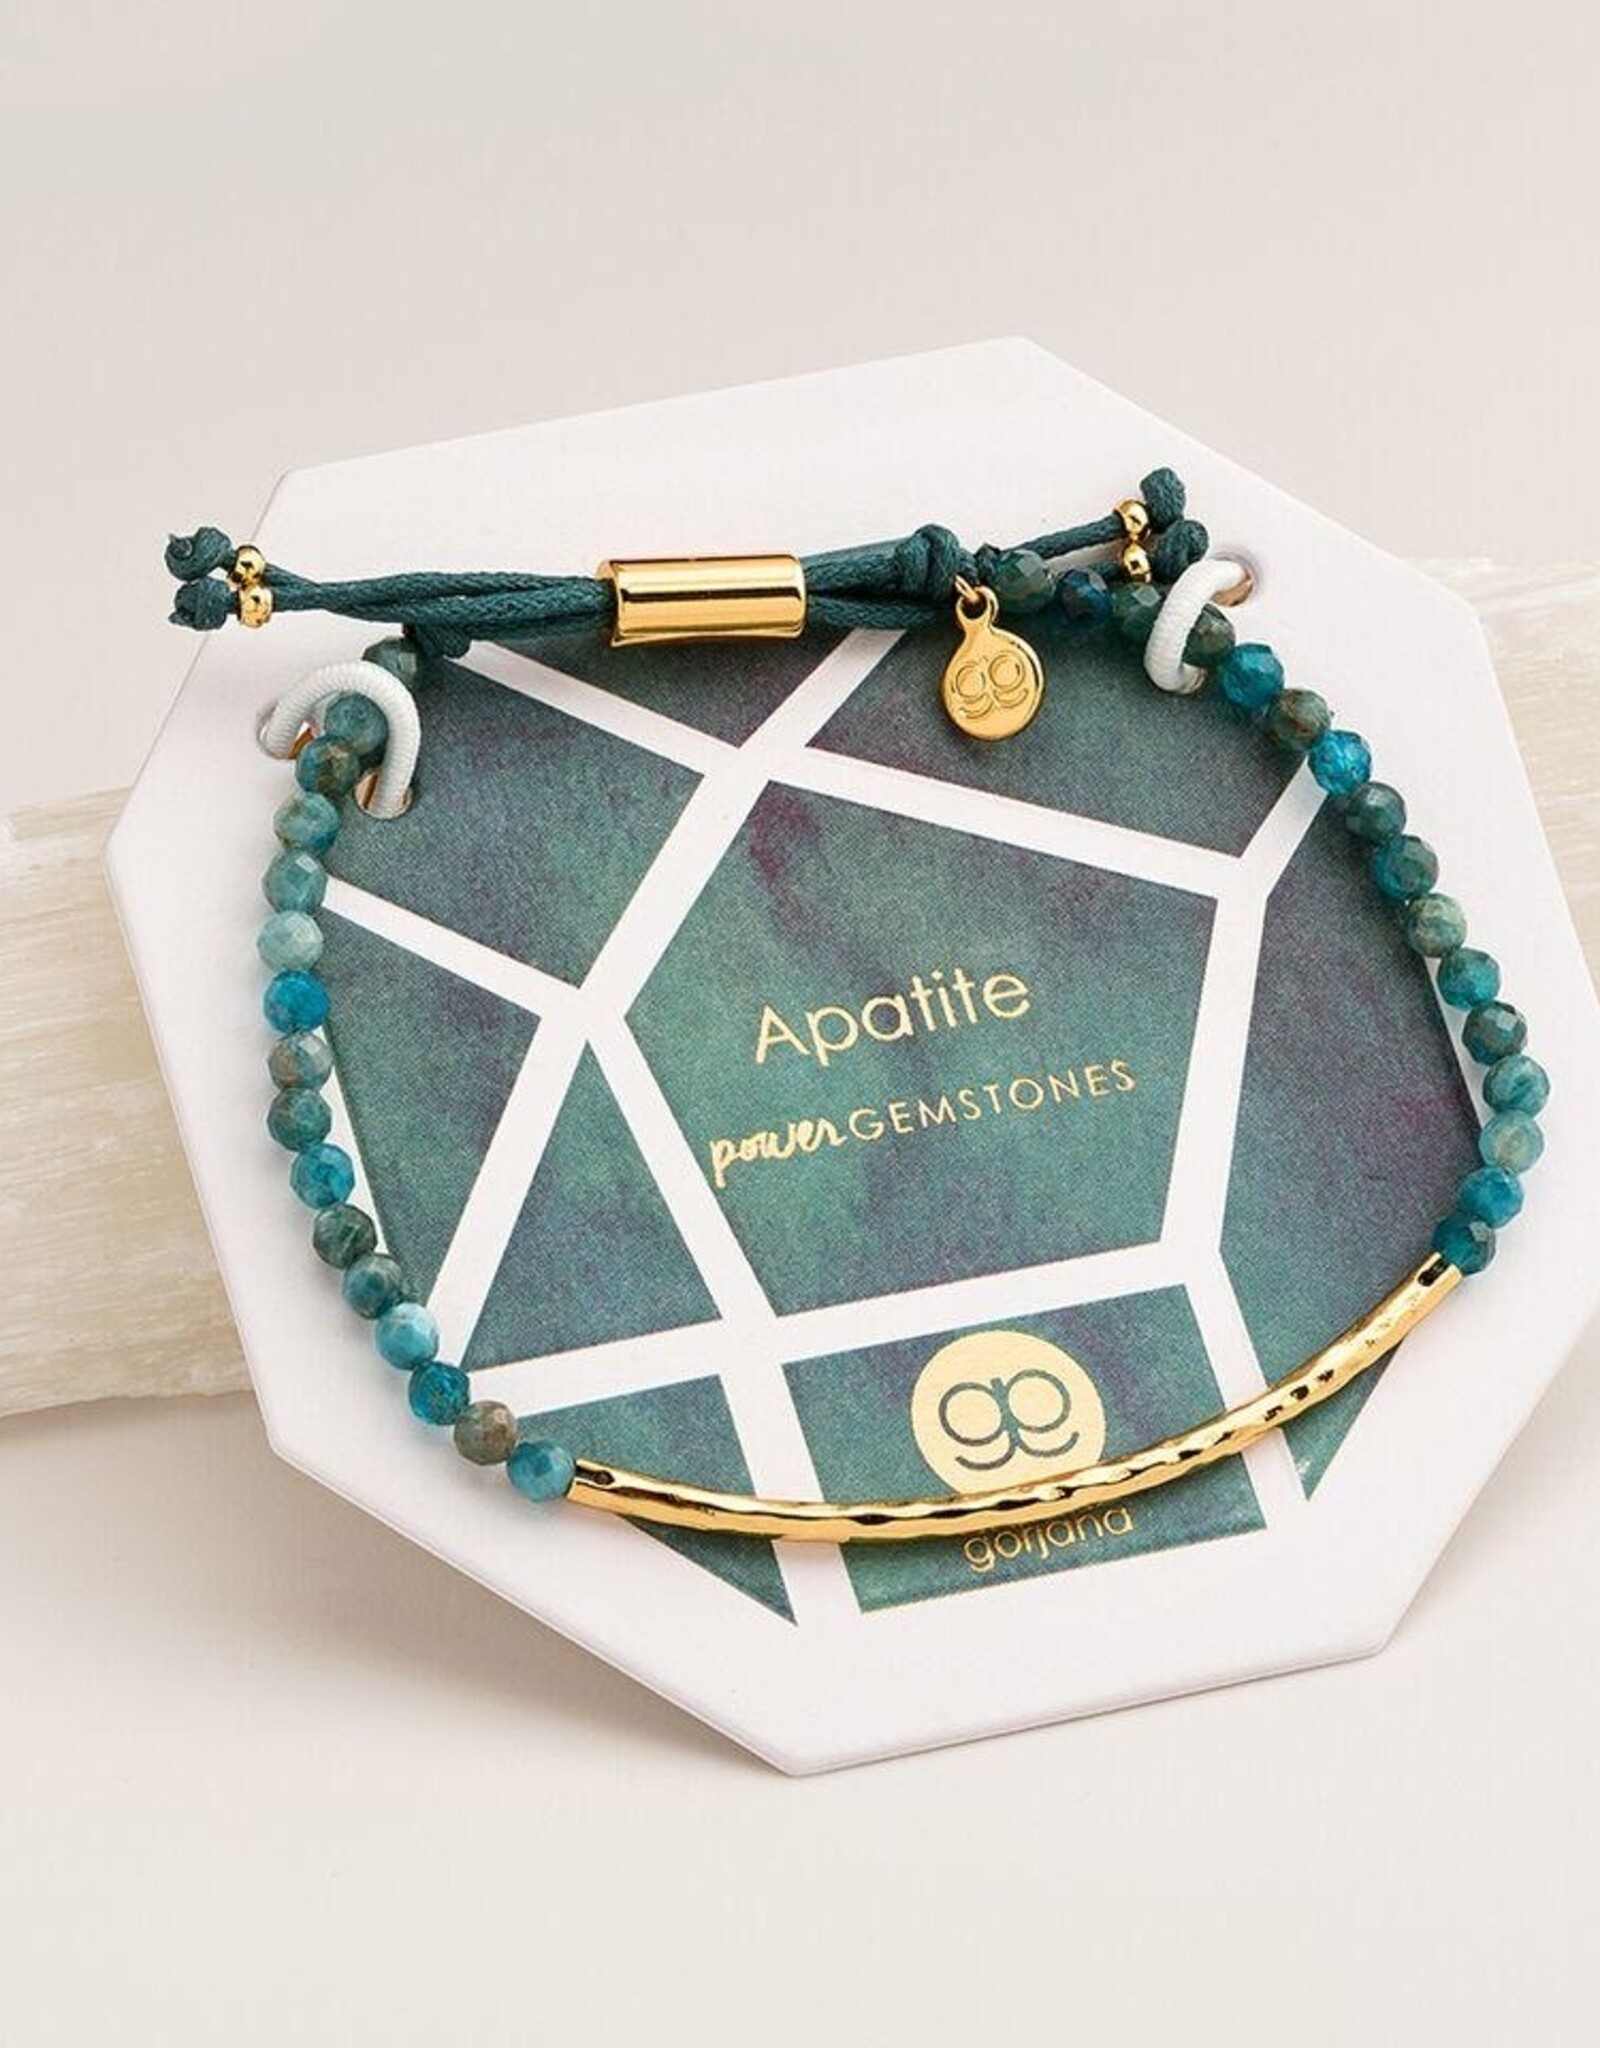 Gorjana Apatite (Inspiration) Power Gemstone Bracelet Gold